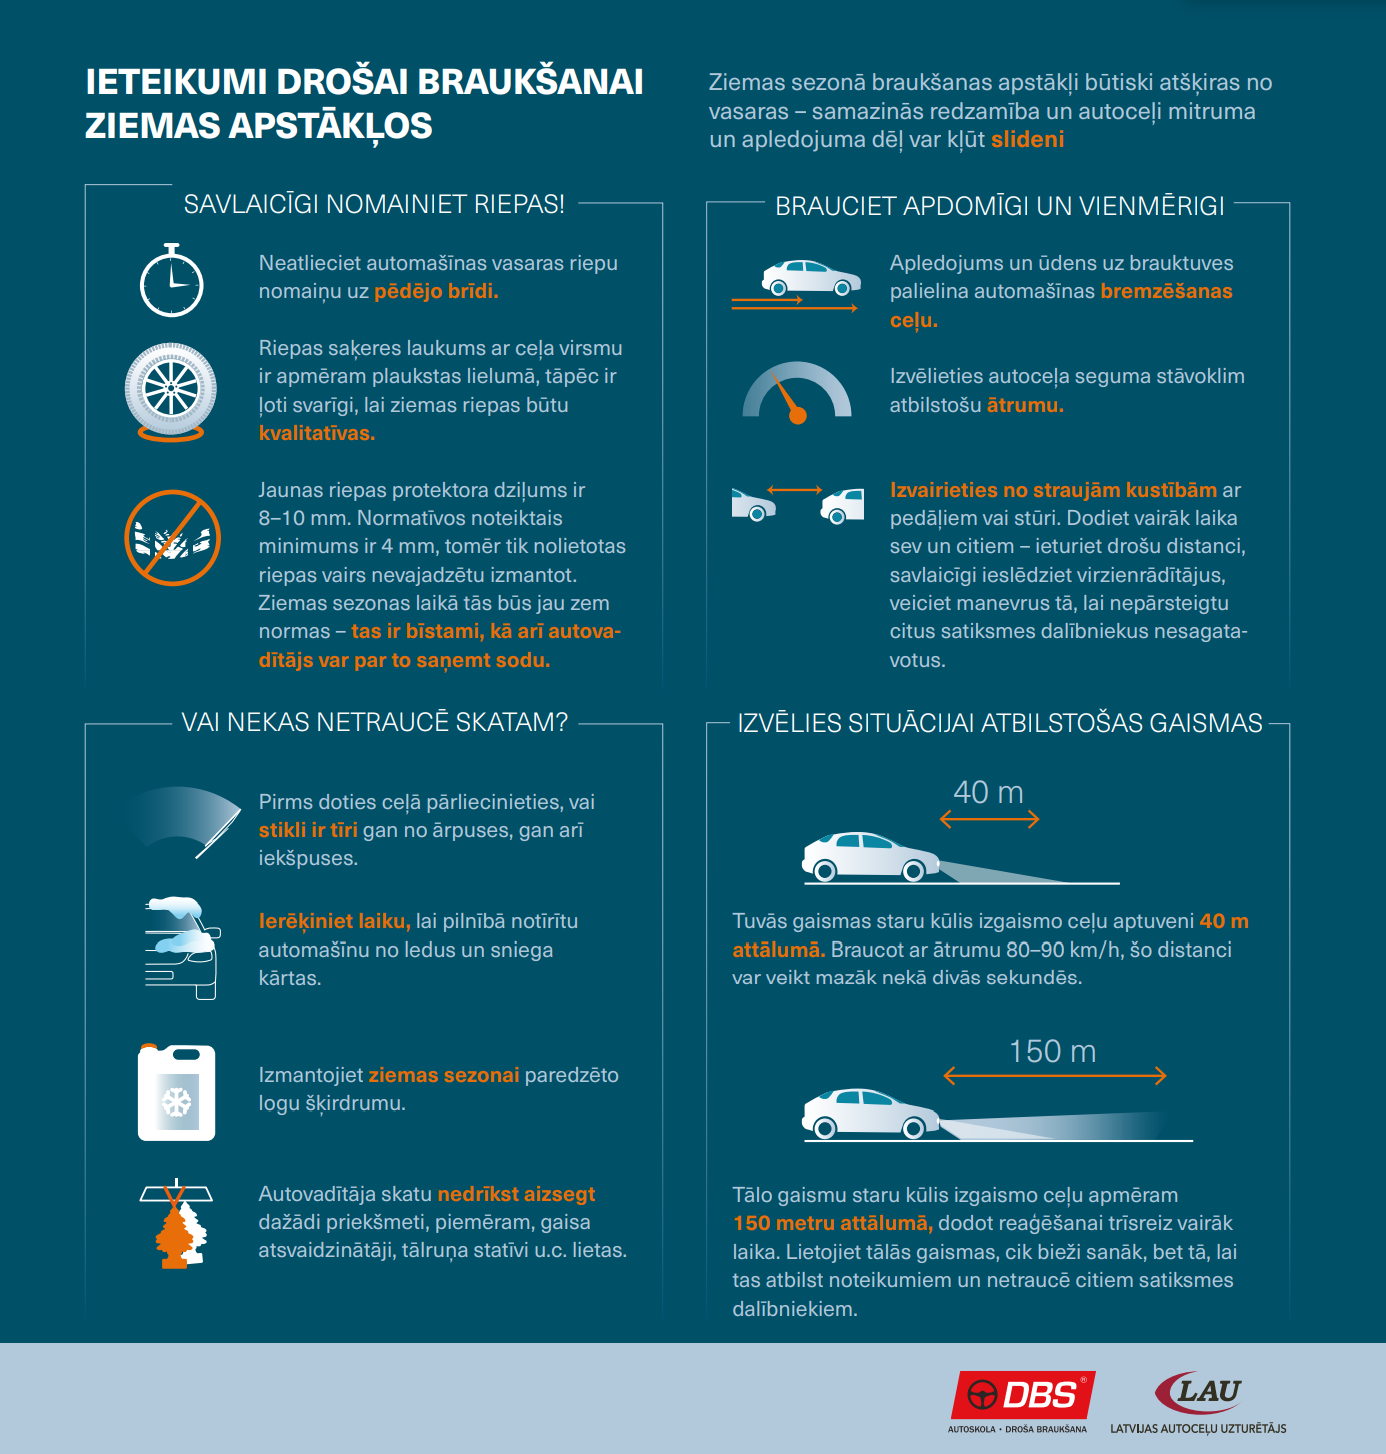 Drošas braukšanas padomi infografikas formā